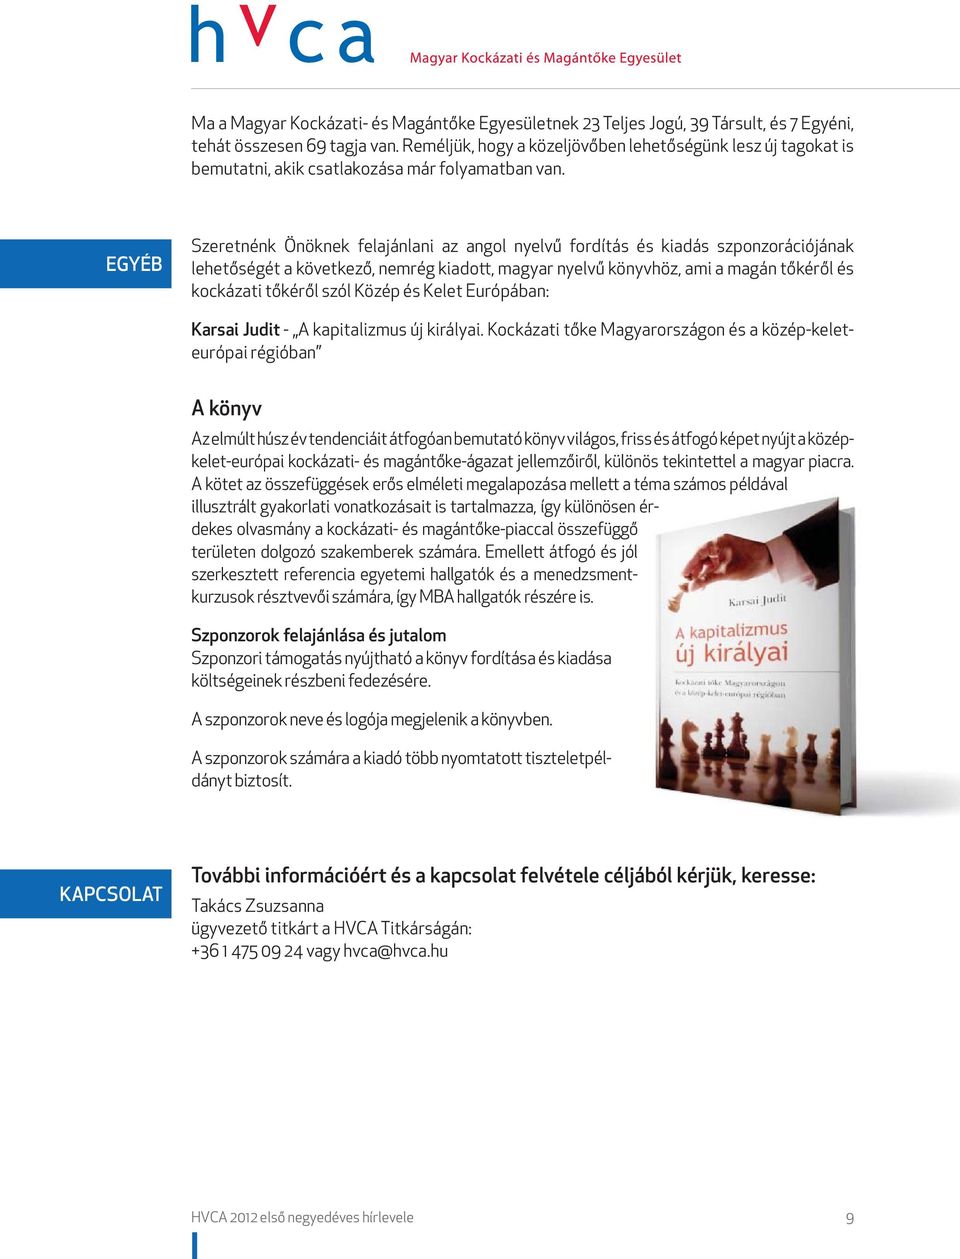 EGYÉB Szeretnénk Önöknek felajánlani az angol nyelvű fordítás és kiadás szponzorációjának lehetőségét a következő, nemrég kiadott, magyar nyelvű könyvhöz, ami a magán tőkéről és kockázati tőkéről